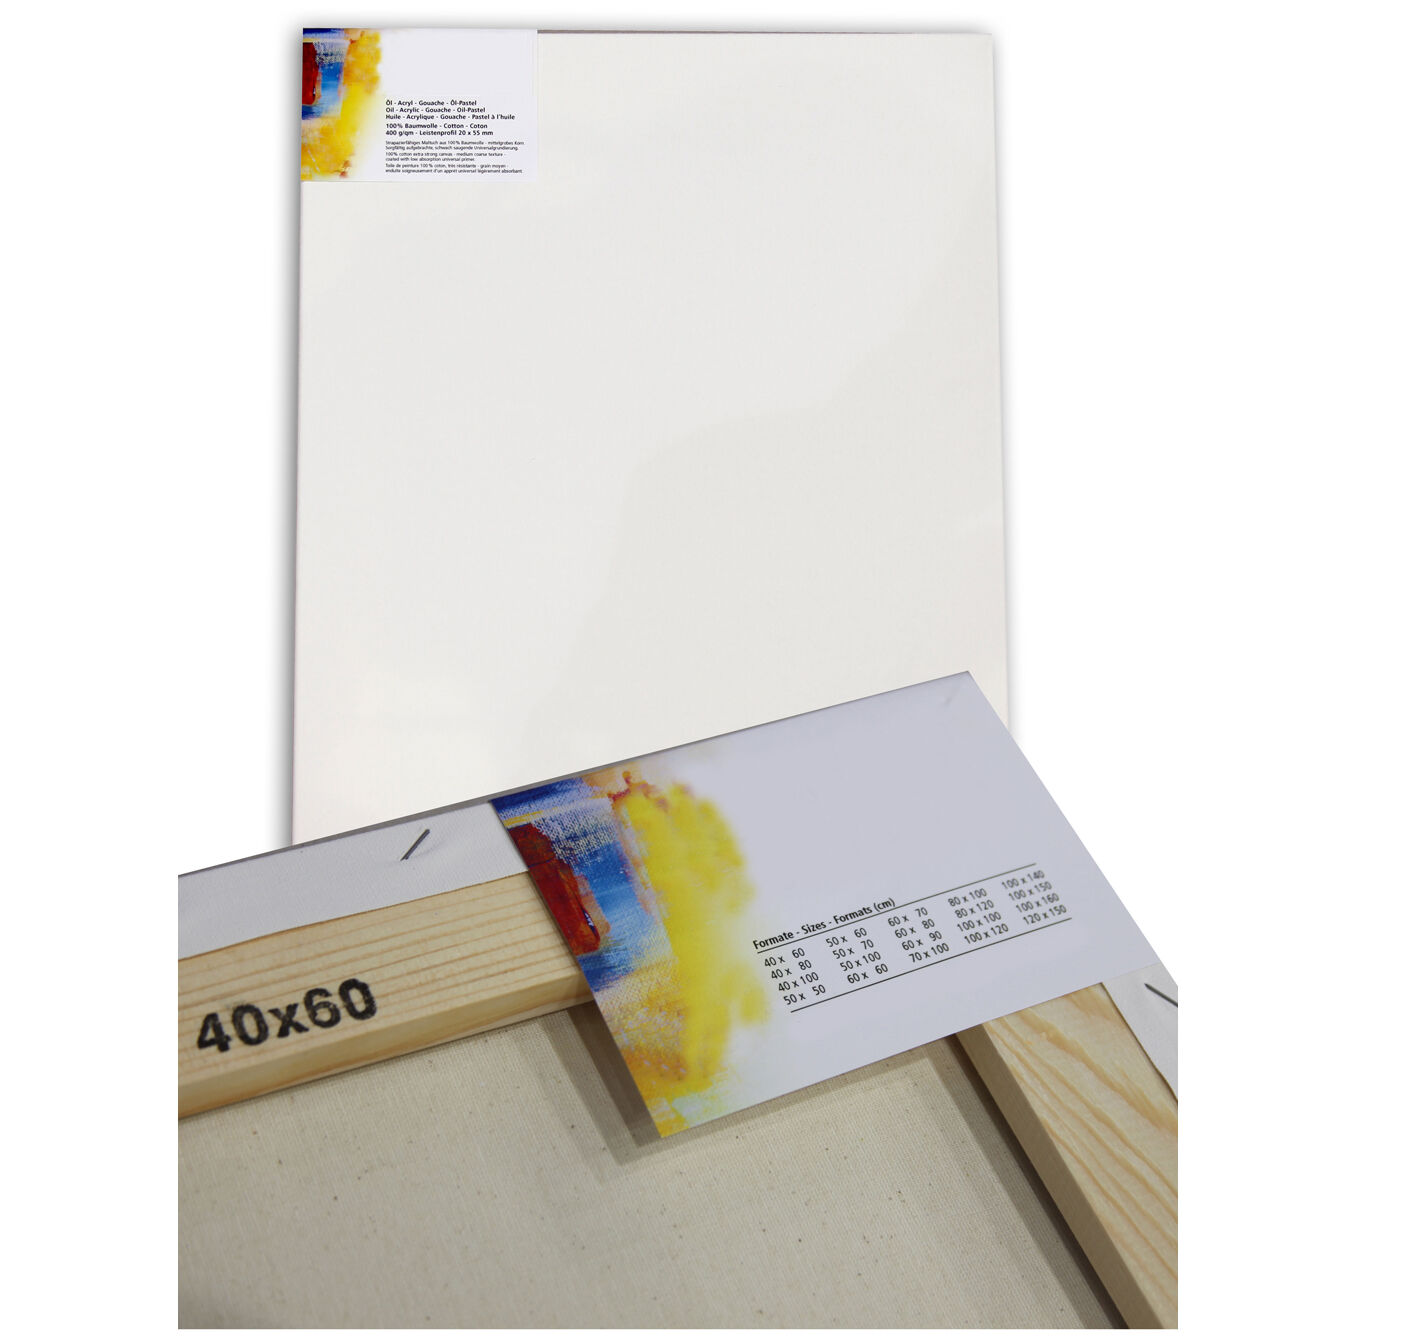 NEU Cotton 400 Premium-Keilrahmen Professionell 20mm Leistenstärke, 60x60cm - 1 Stück Bild 2